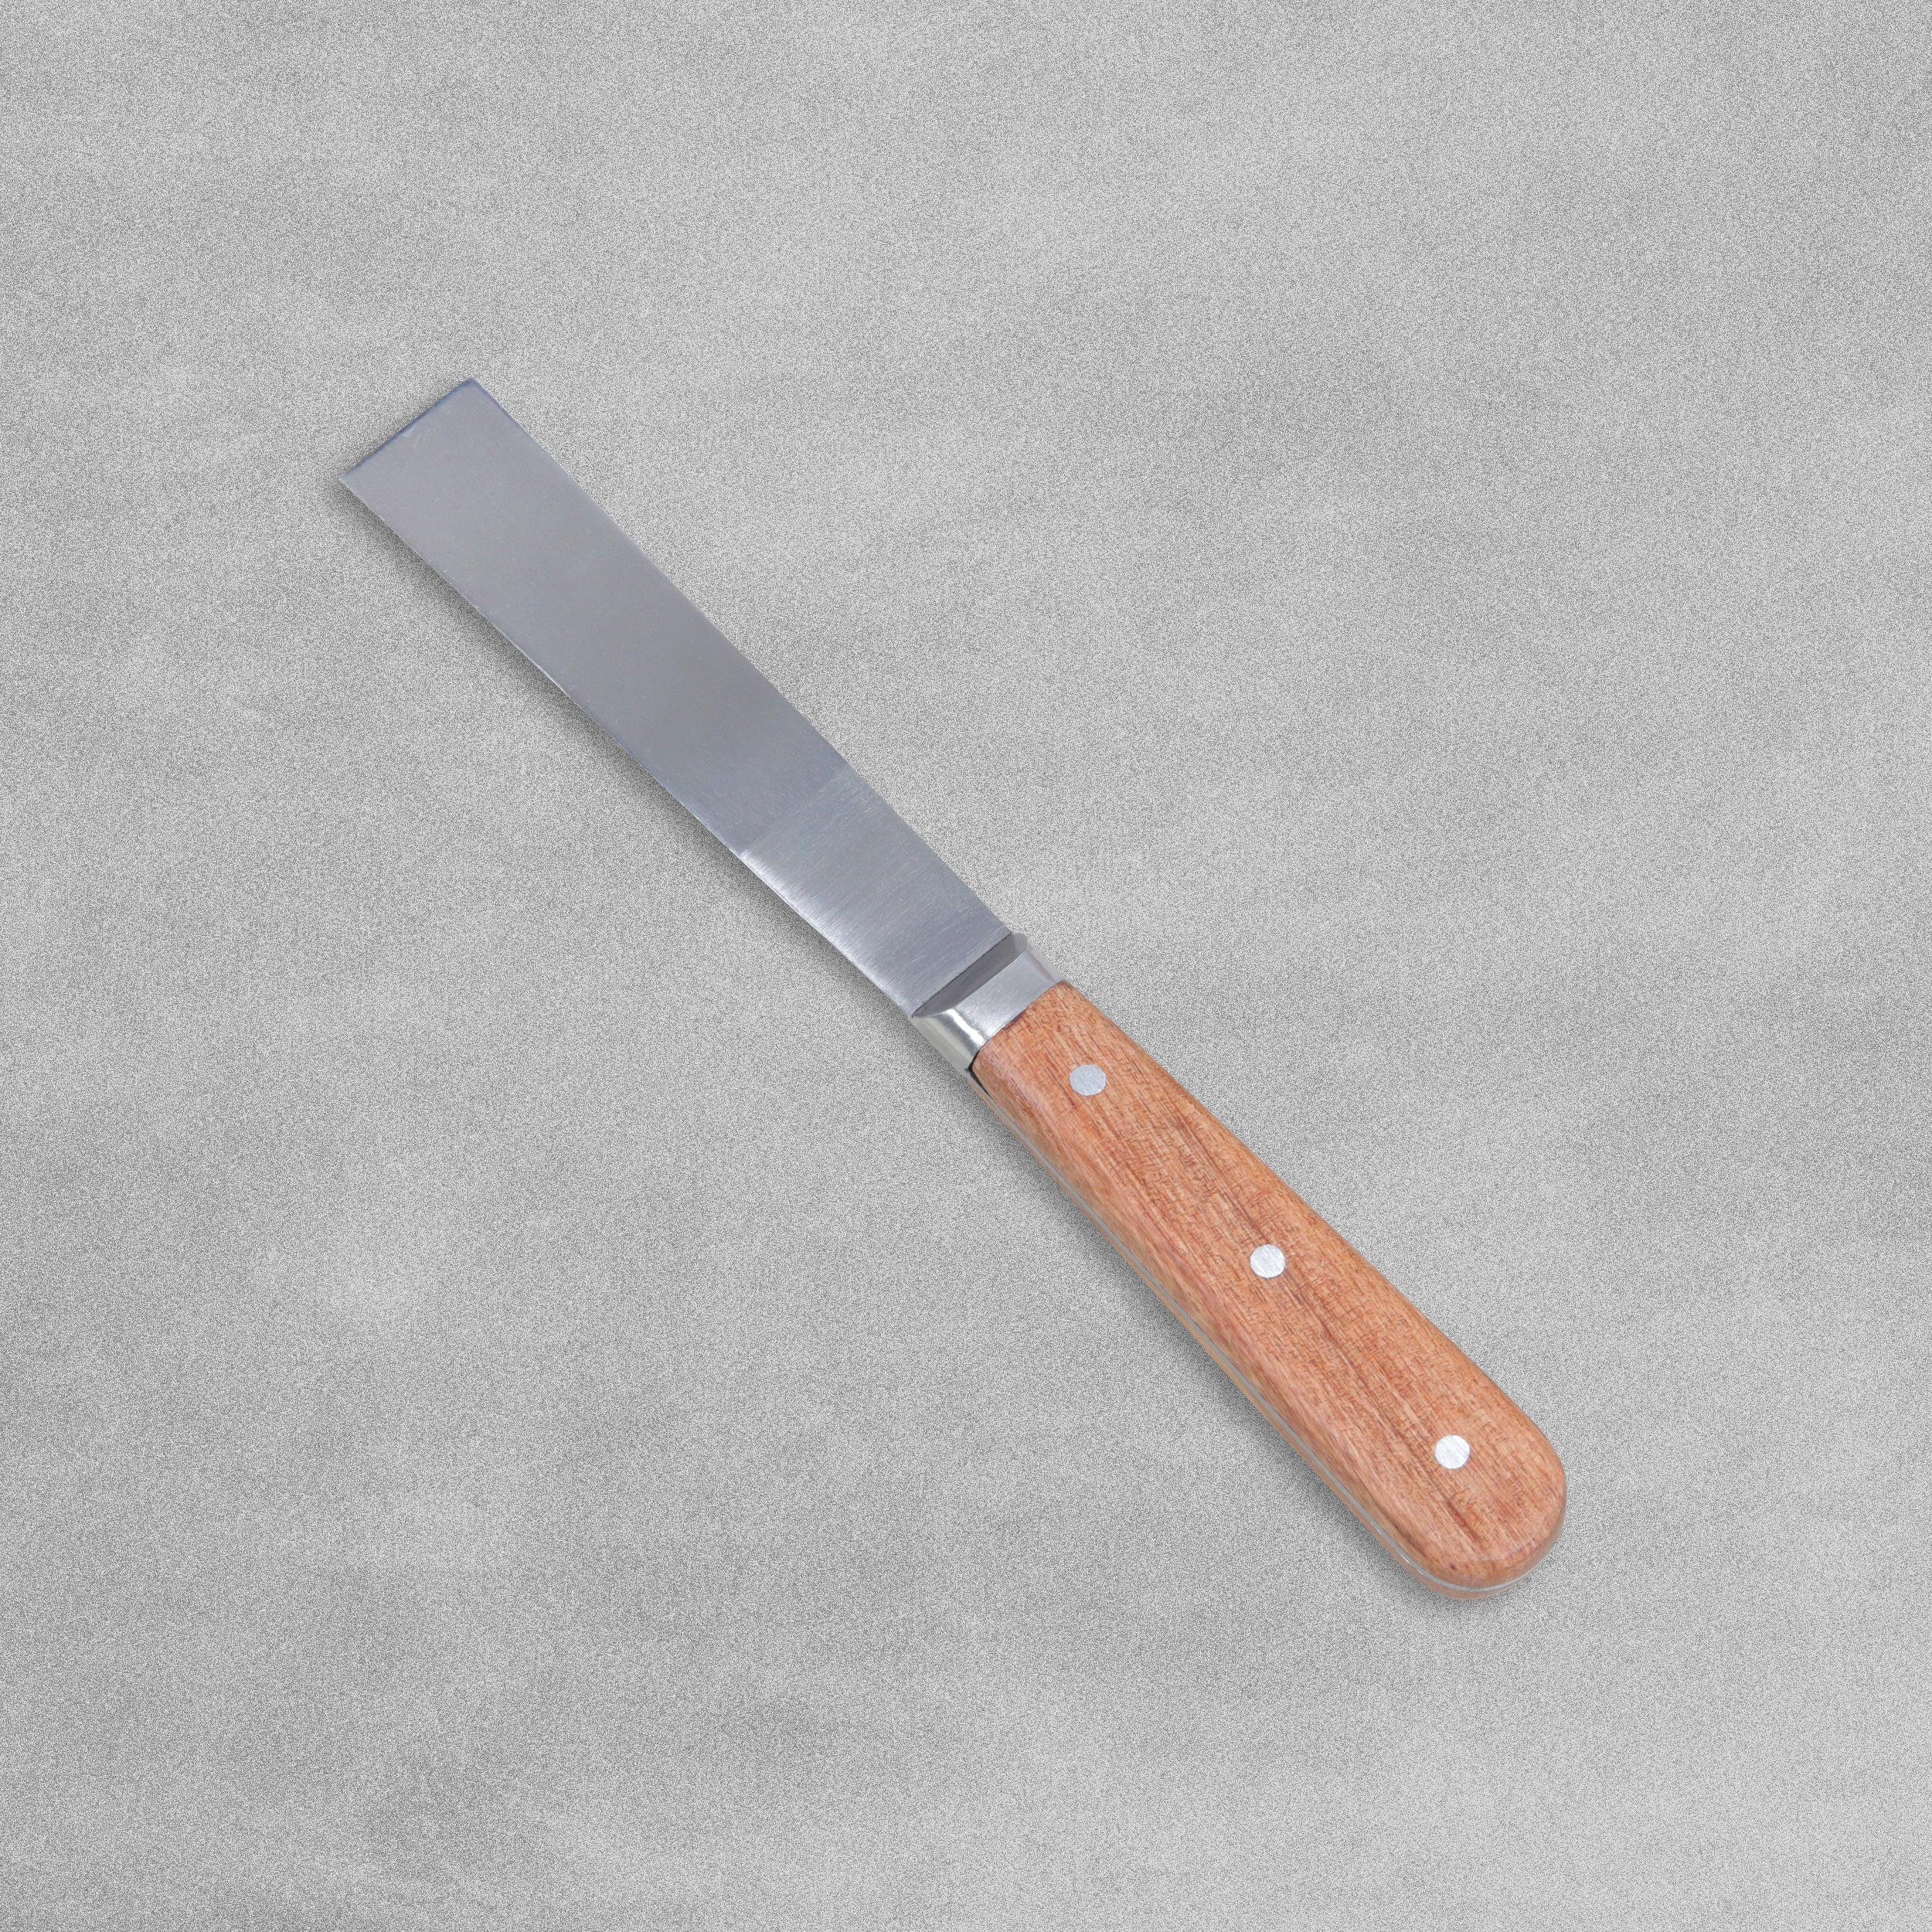 Stanley 25mm (1") Filling Knife